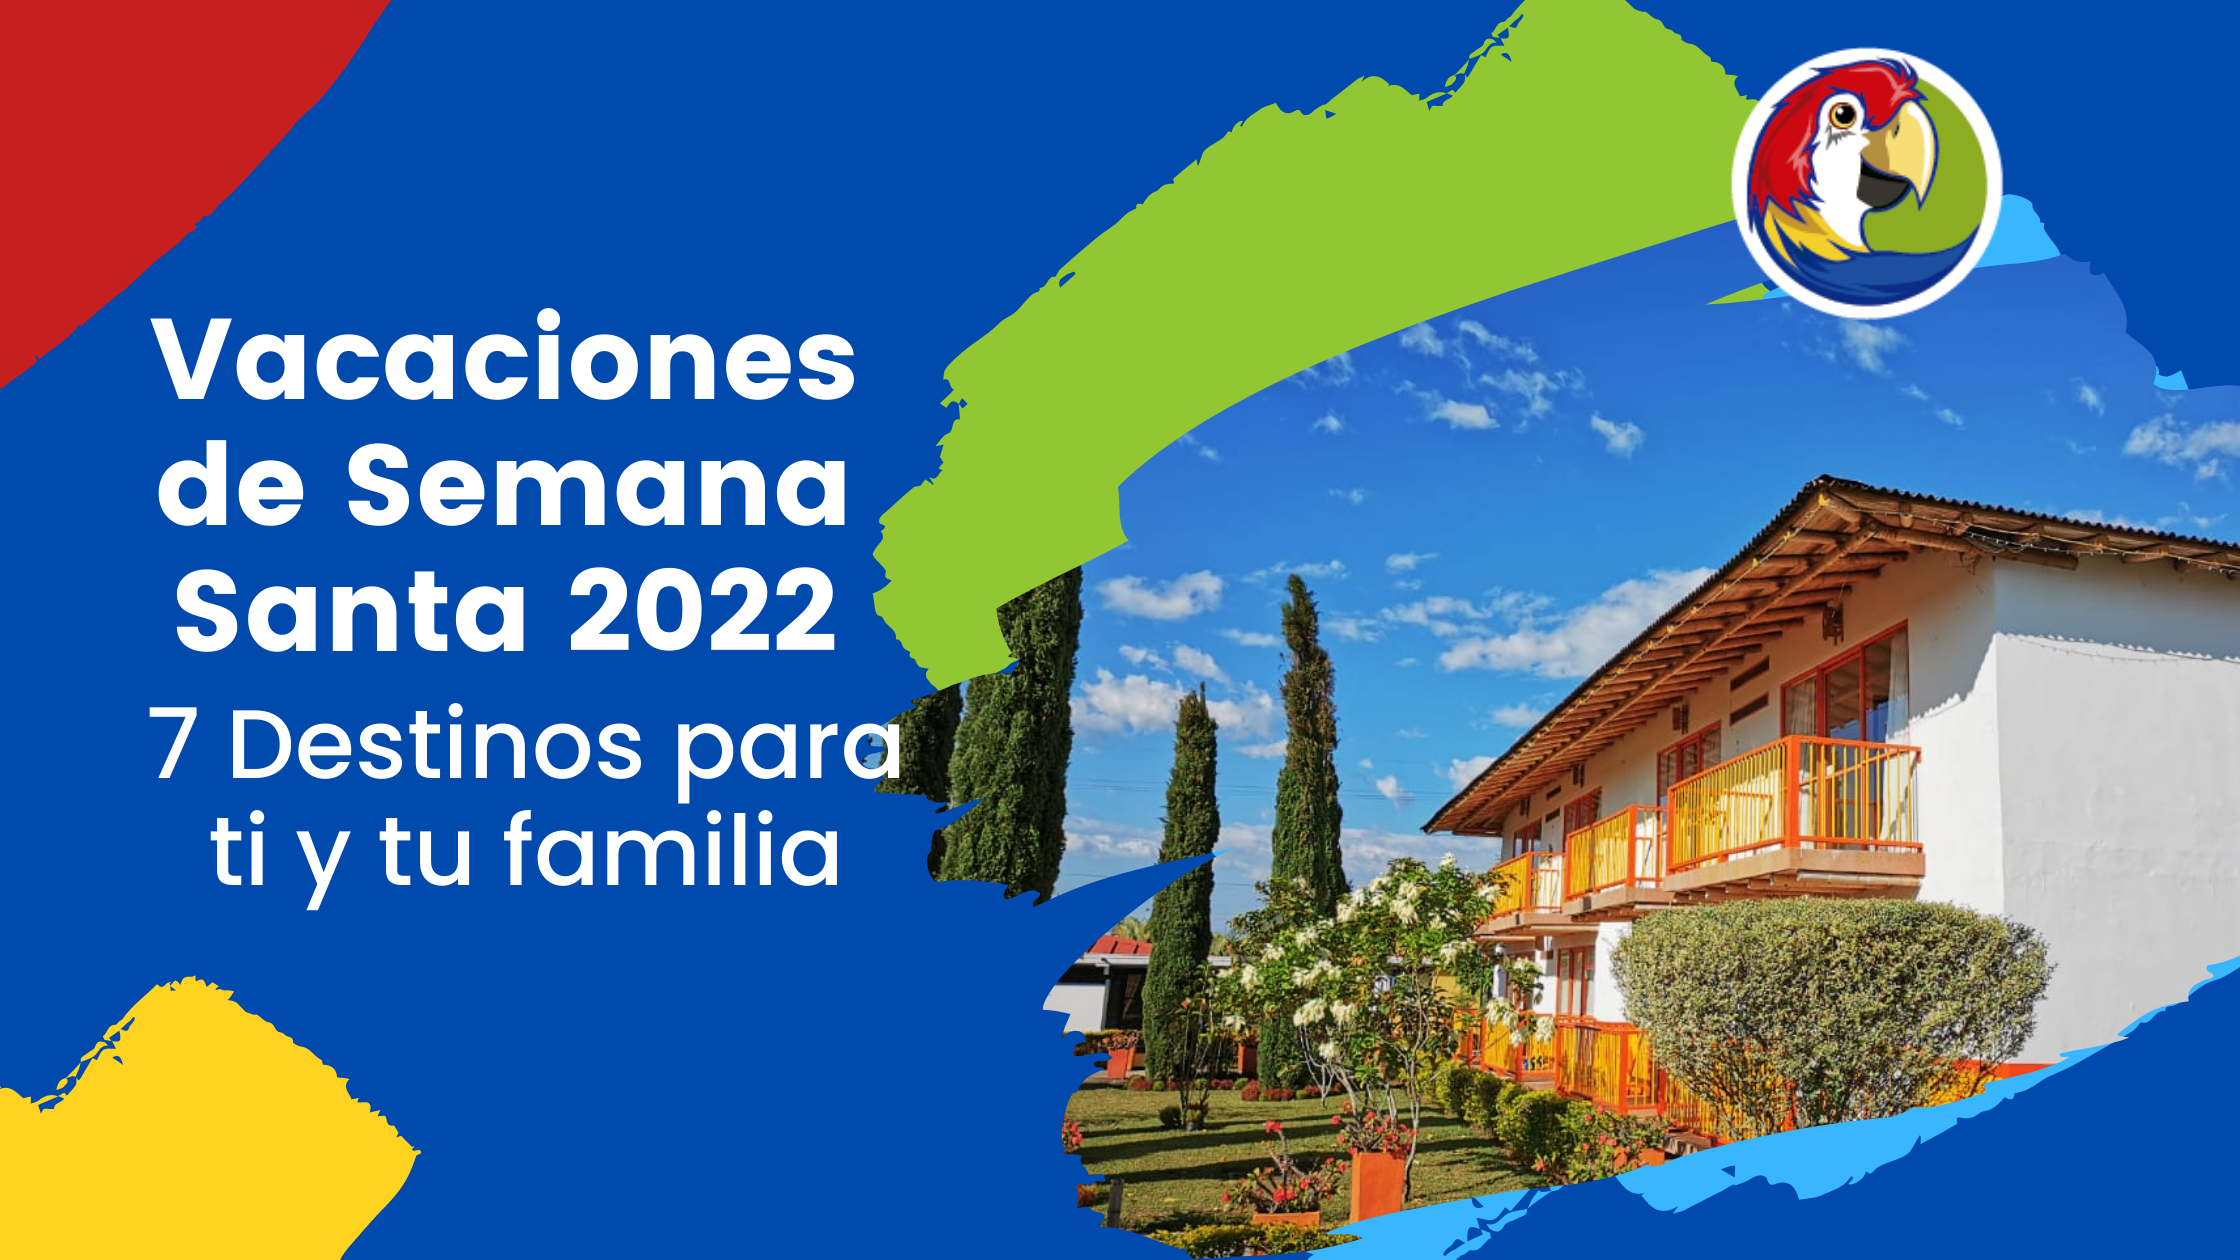 Blog Vacaciones Semana Santa 2022 - 7 destinos para ti y tu familia - Planes a Colombia - ColombiaTours.Travel